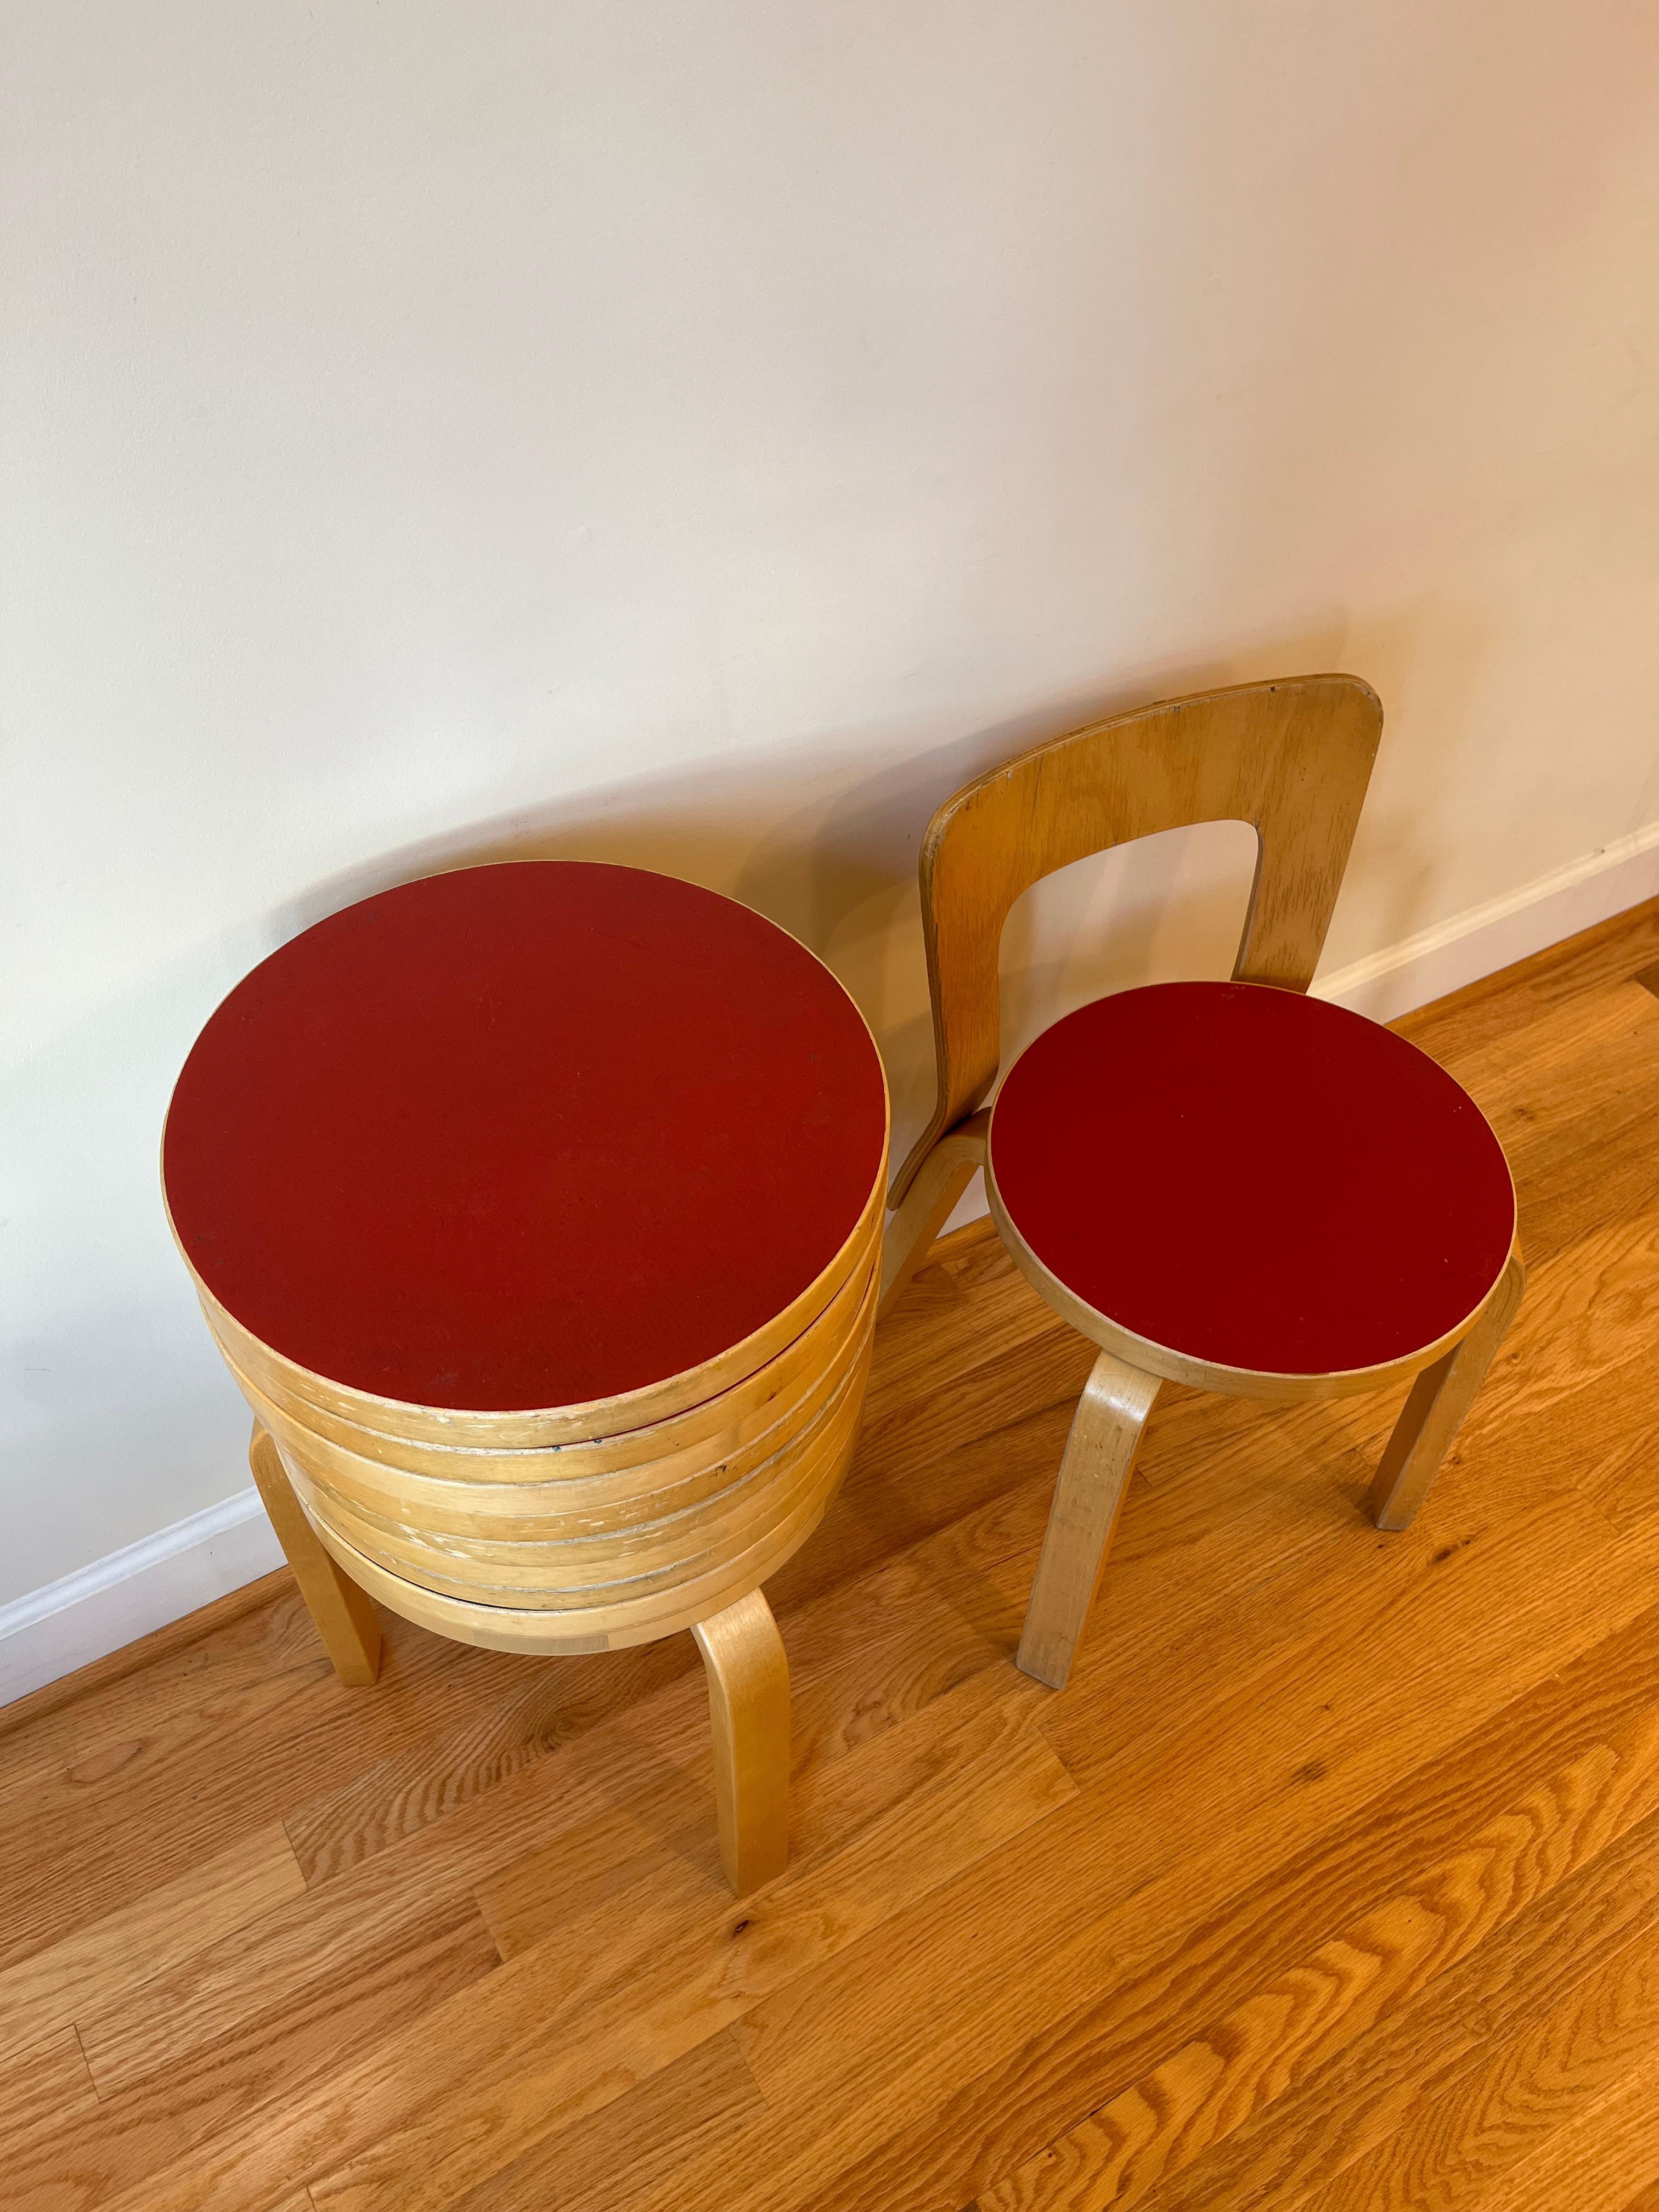 Chair 65 by Alvar Aalto for Artek (Red Linoleum) 1